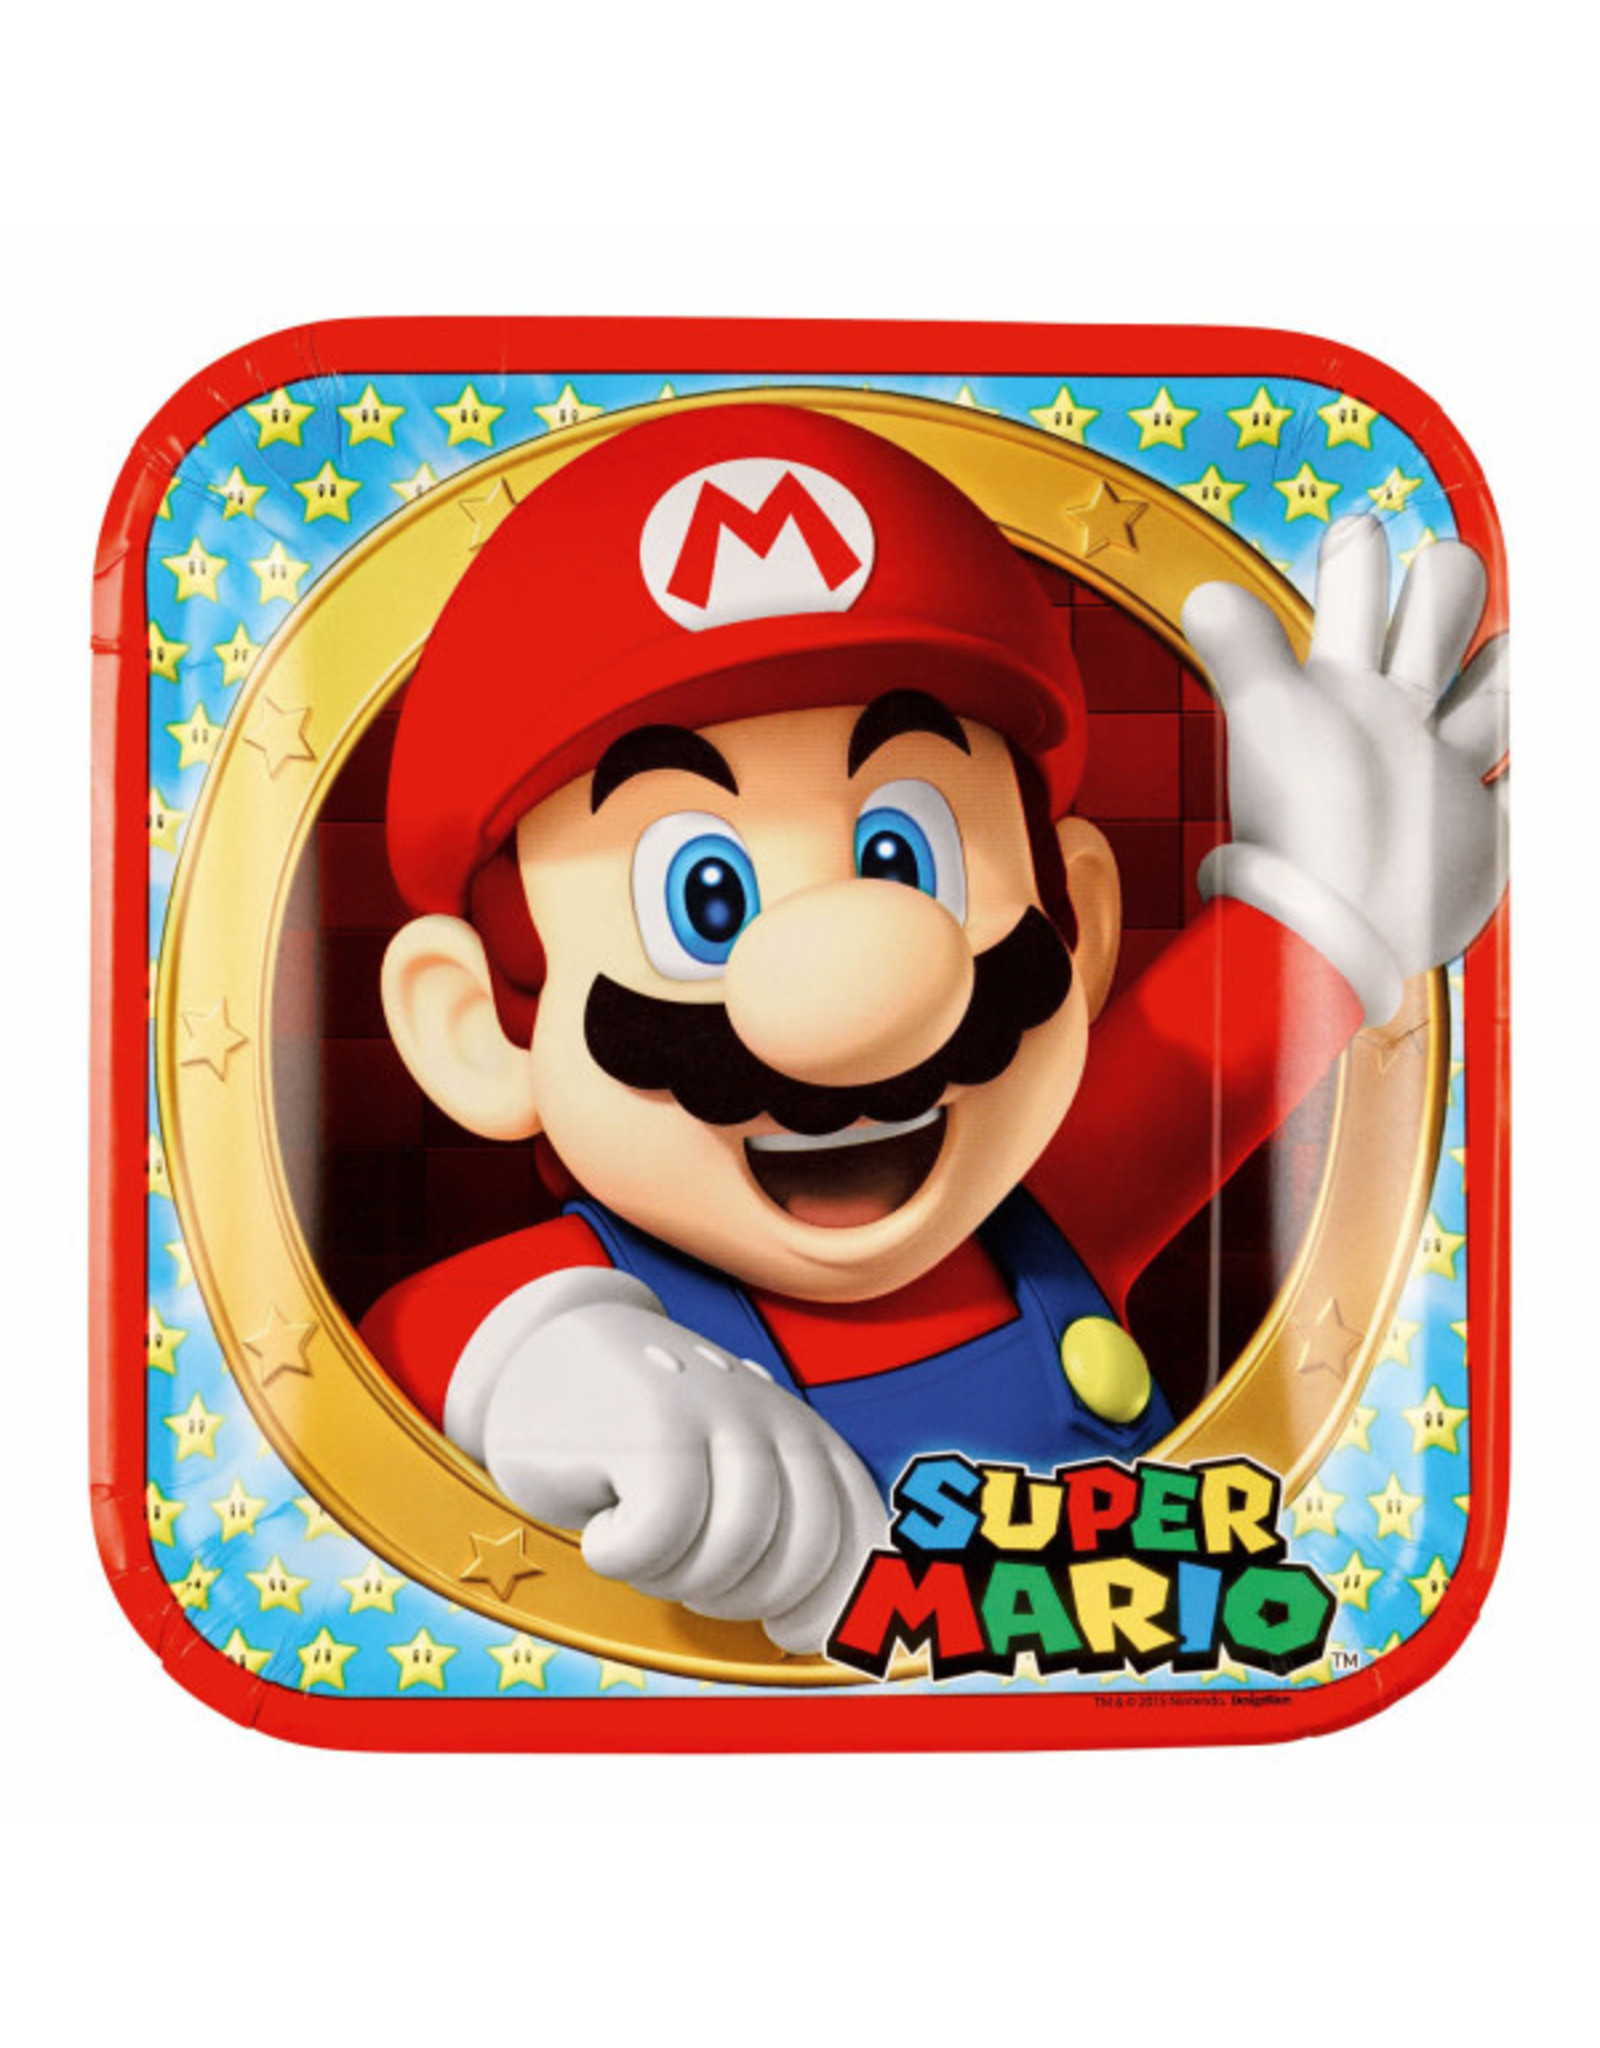 Super Mario kartonnen borden 23 cm 8 stuks